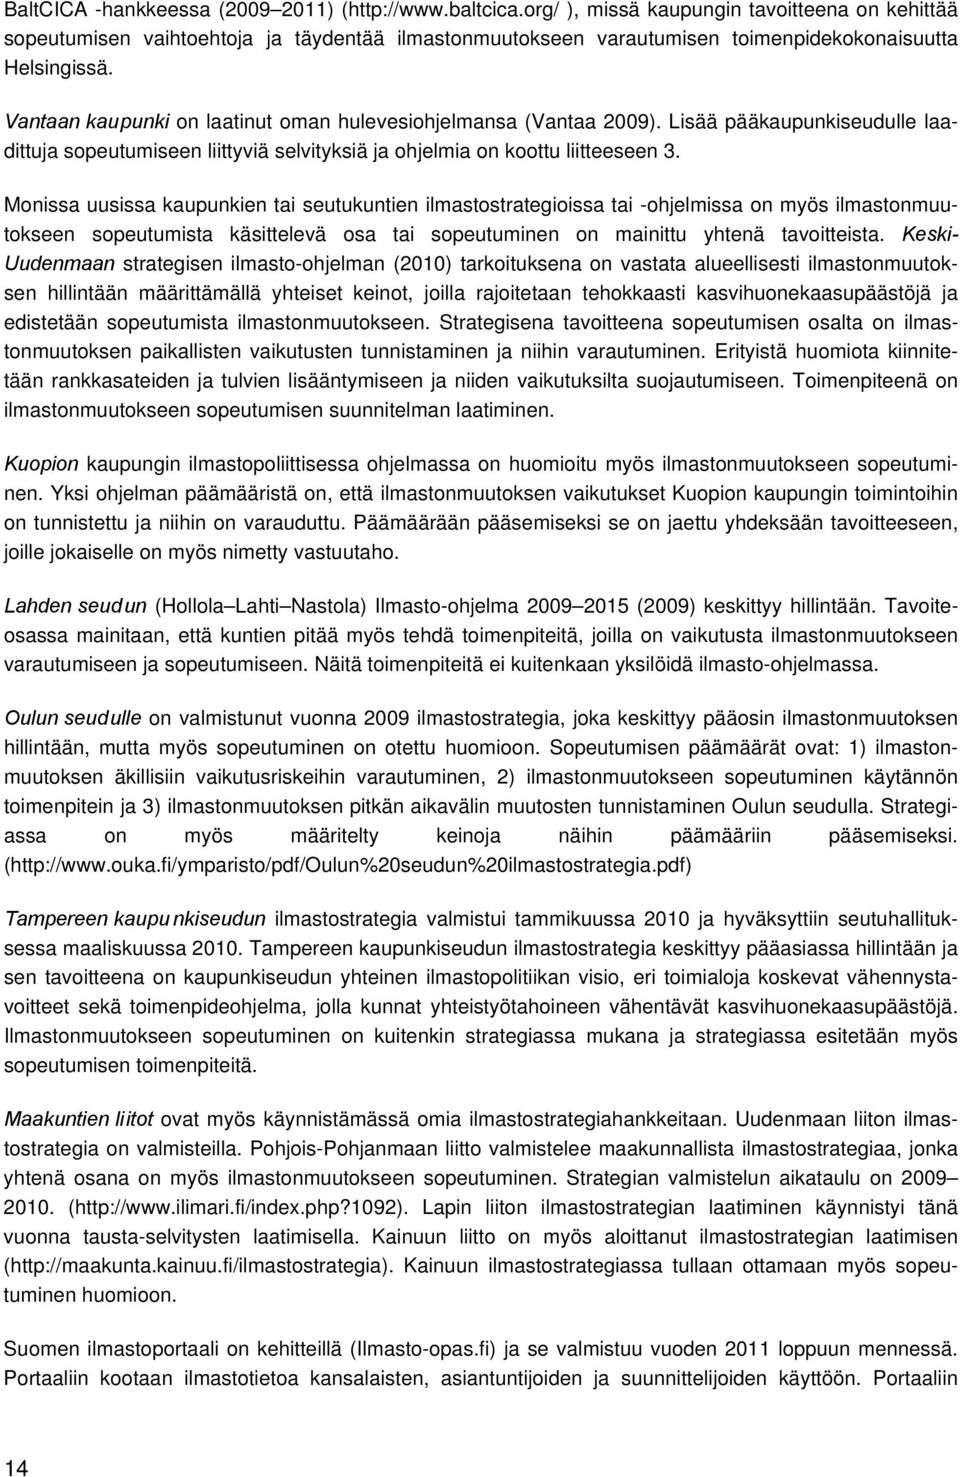 Vantaan kaupunki on laatinut oman hulevesiohjelmansa (Vantaa 2009). Lisää pääkaupunkiseudulle laadittuja sopeutumiseen liittyviä selvityksiä ja ohjelmia on koottu liitteeseen 3.